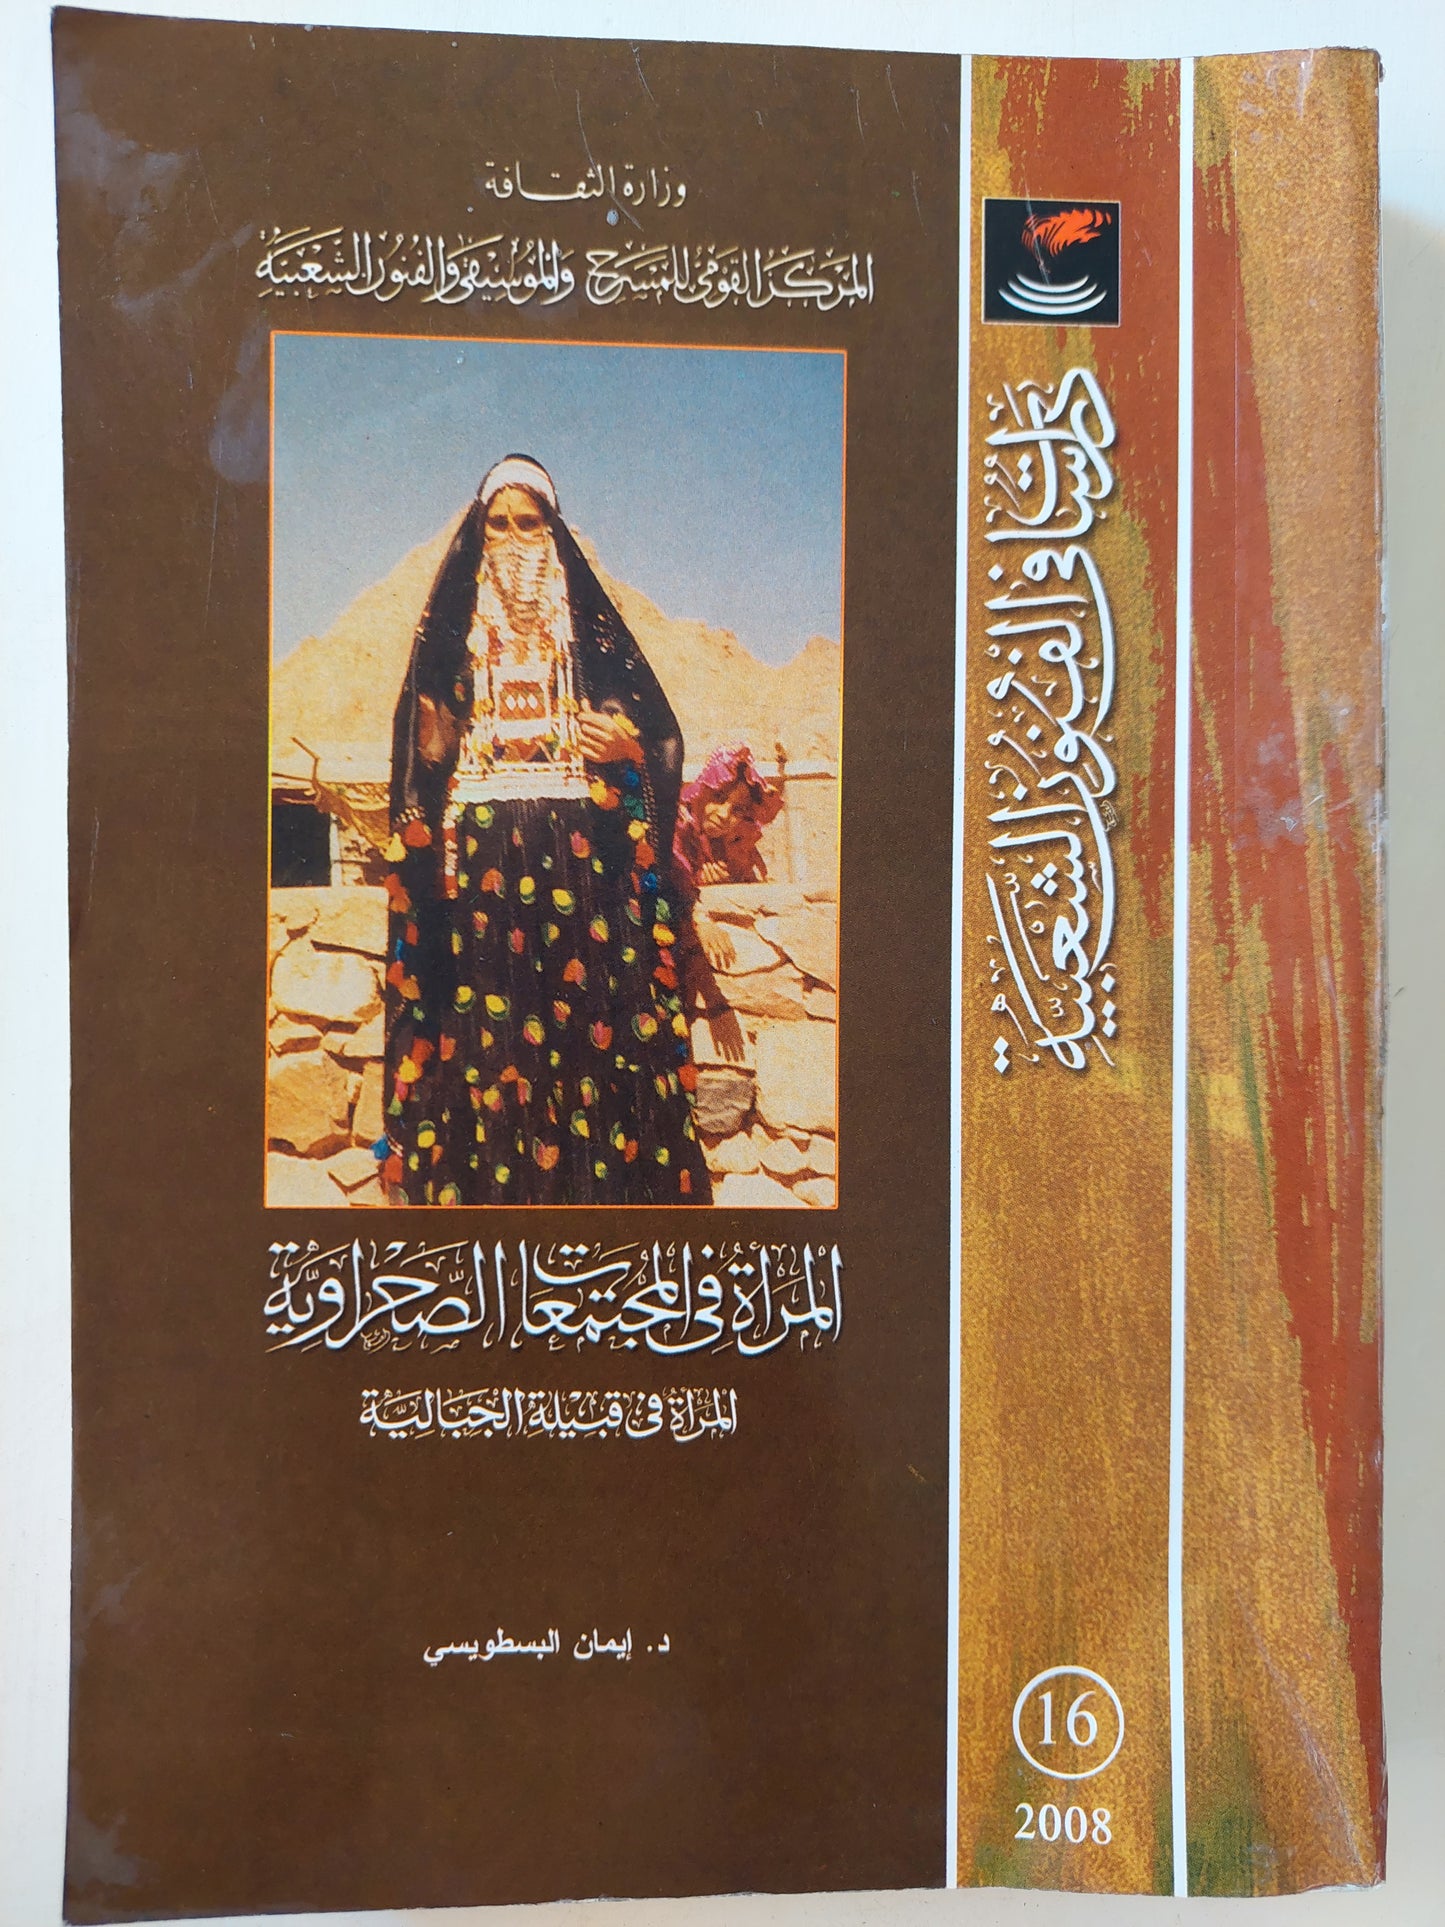 المرأة في المجتمعات الصحراوية : المرأة في قبيلة الجبالية